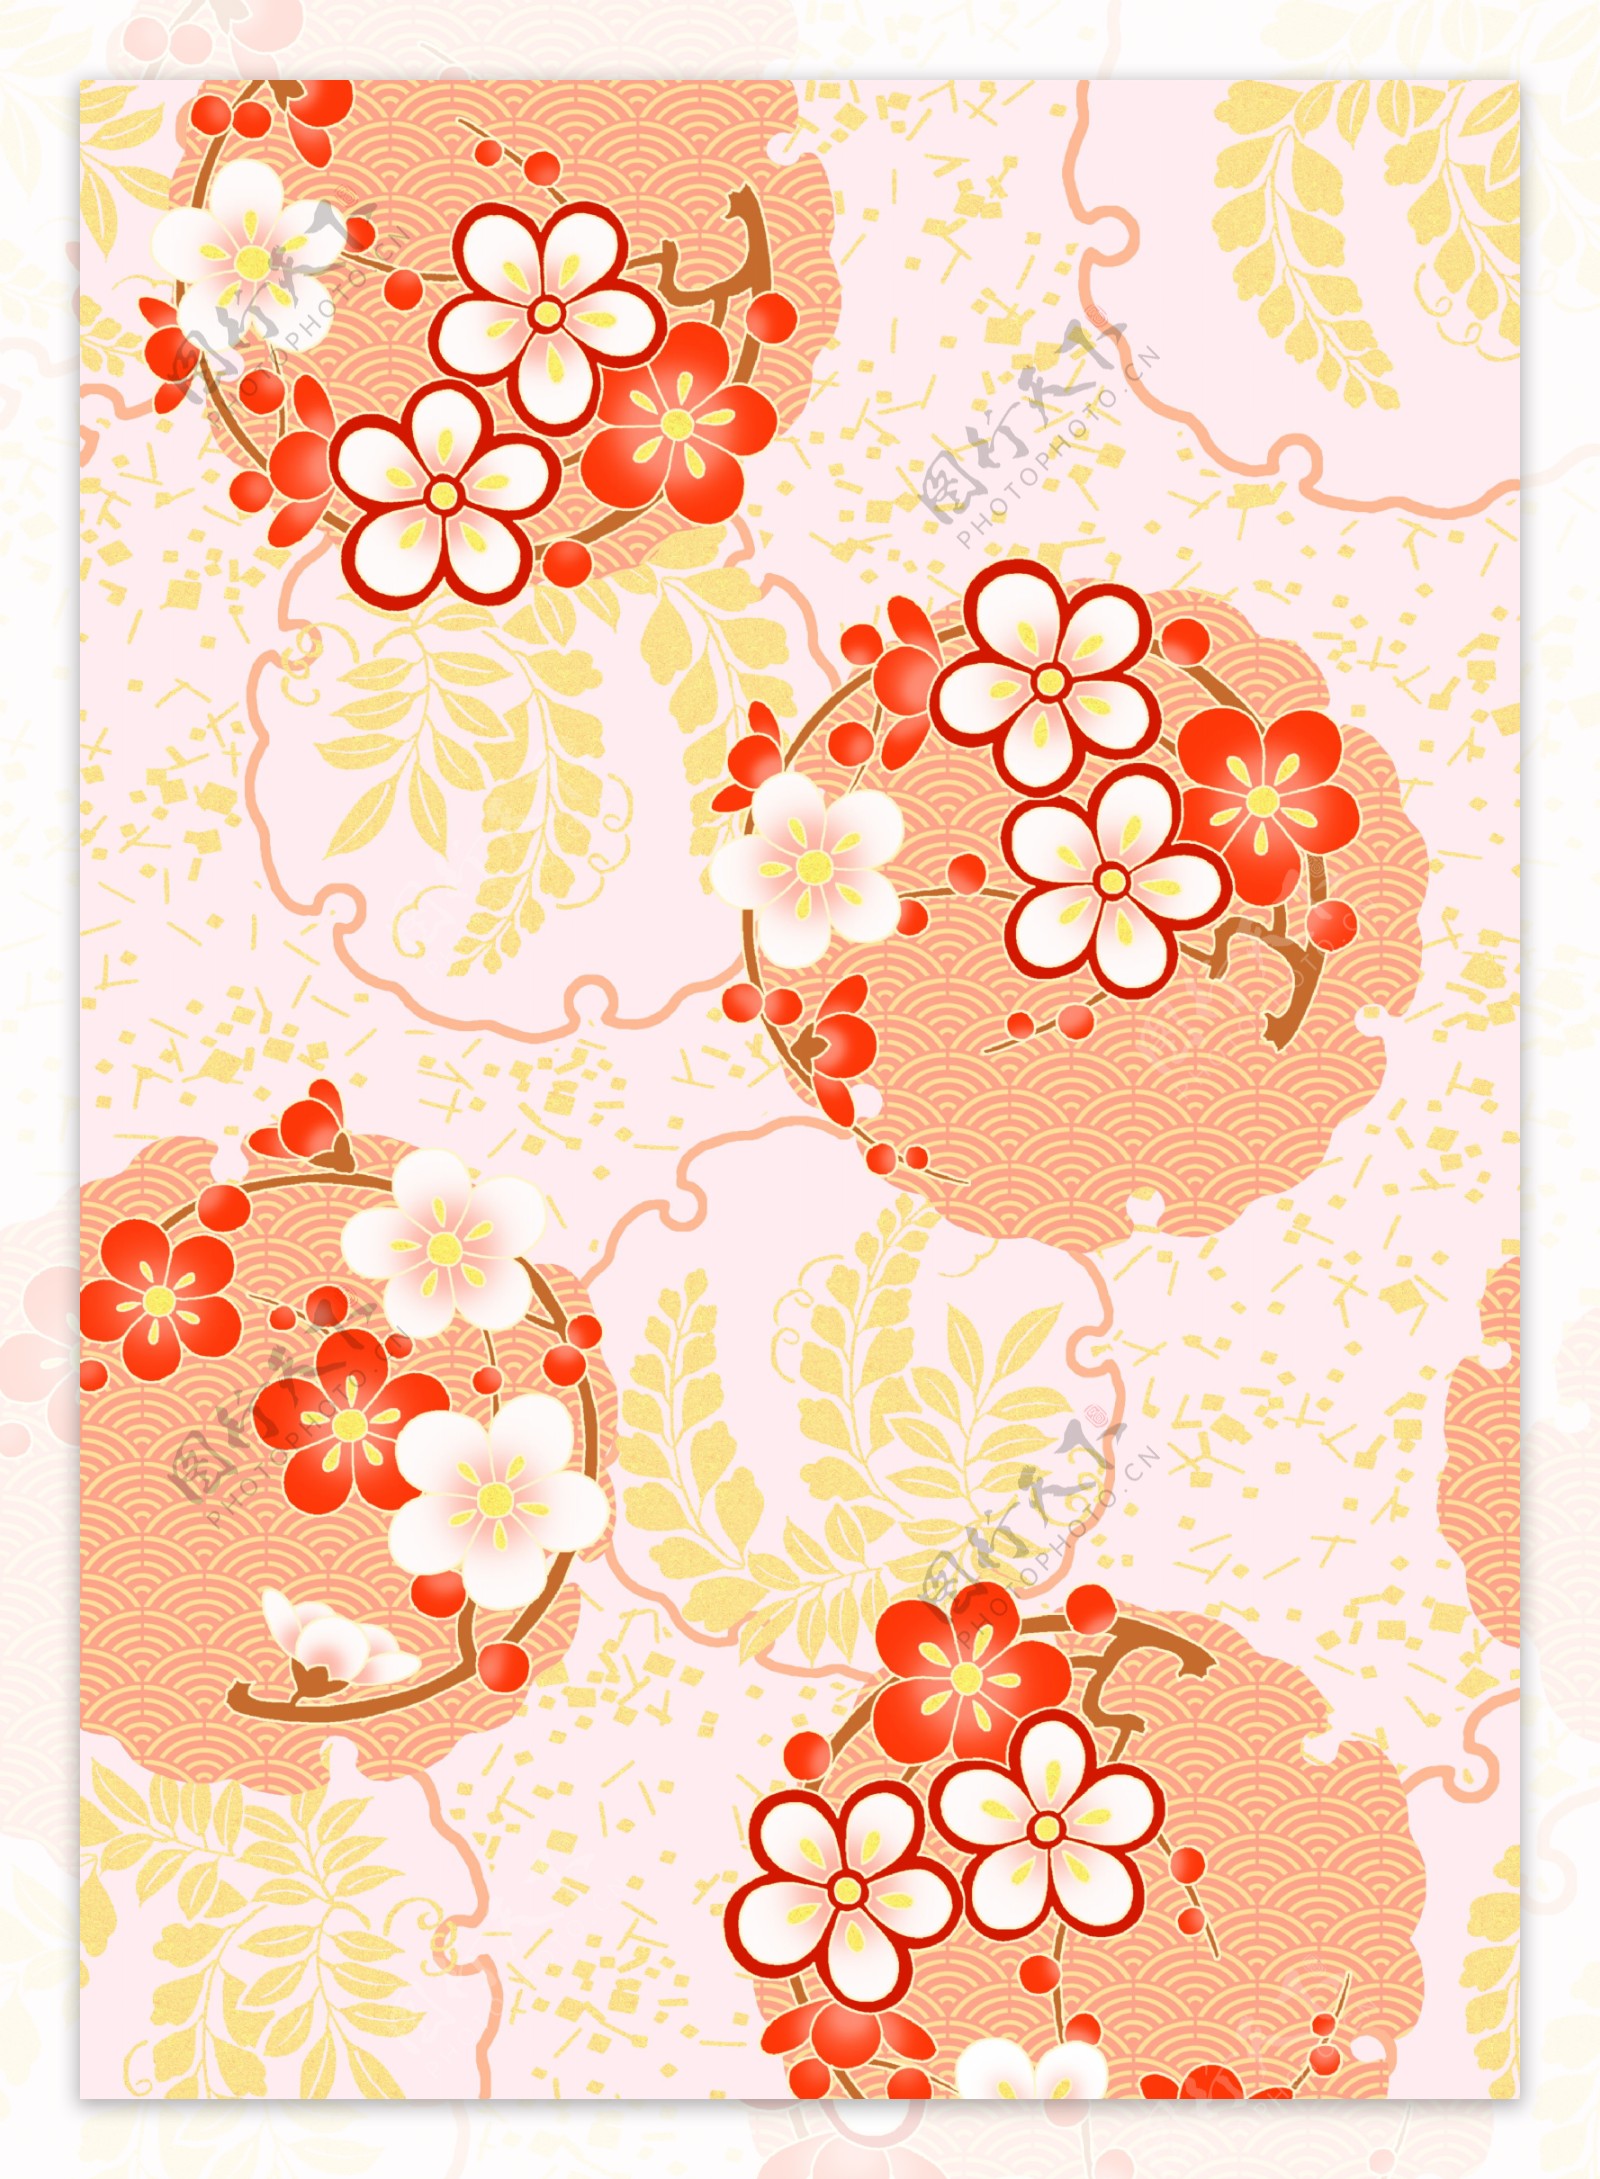 橙黄色梅花枝叶散布背景图